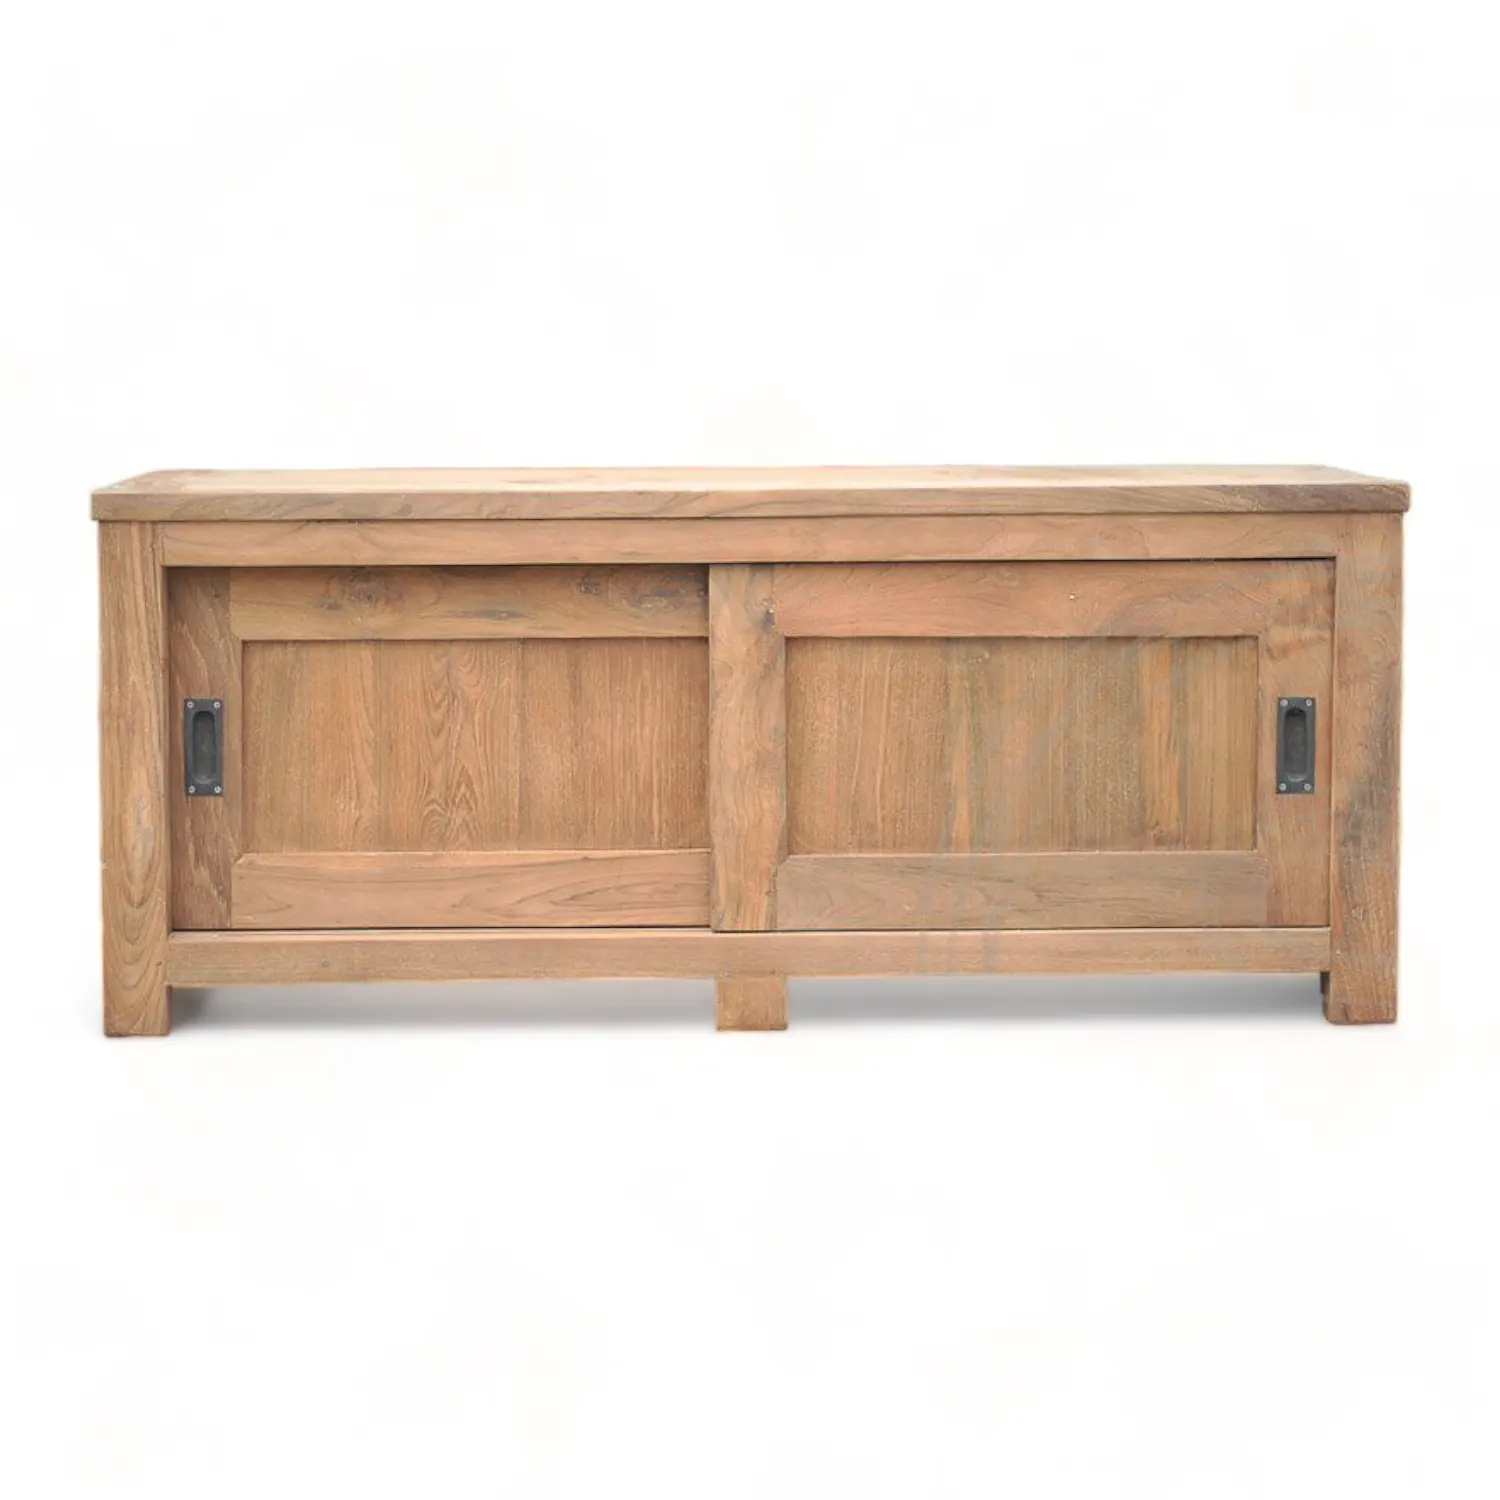 Nuevo diseño pequeño gabinete de madera soportes de Tv mesas de centro Muebles de sala de estar de lujo moderno de madera de teca reciclada gabinete de Tv